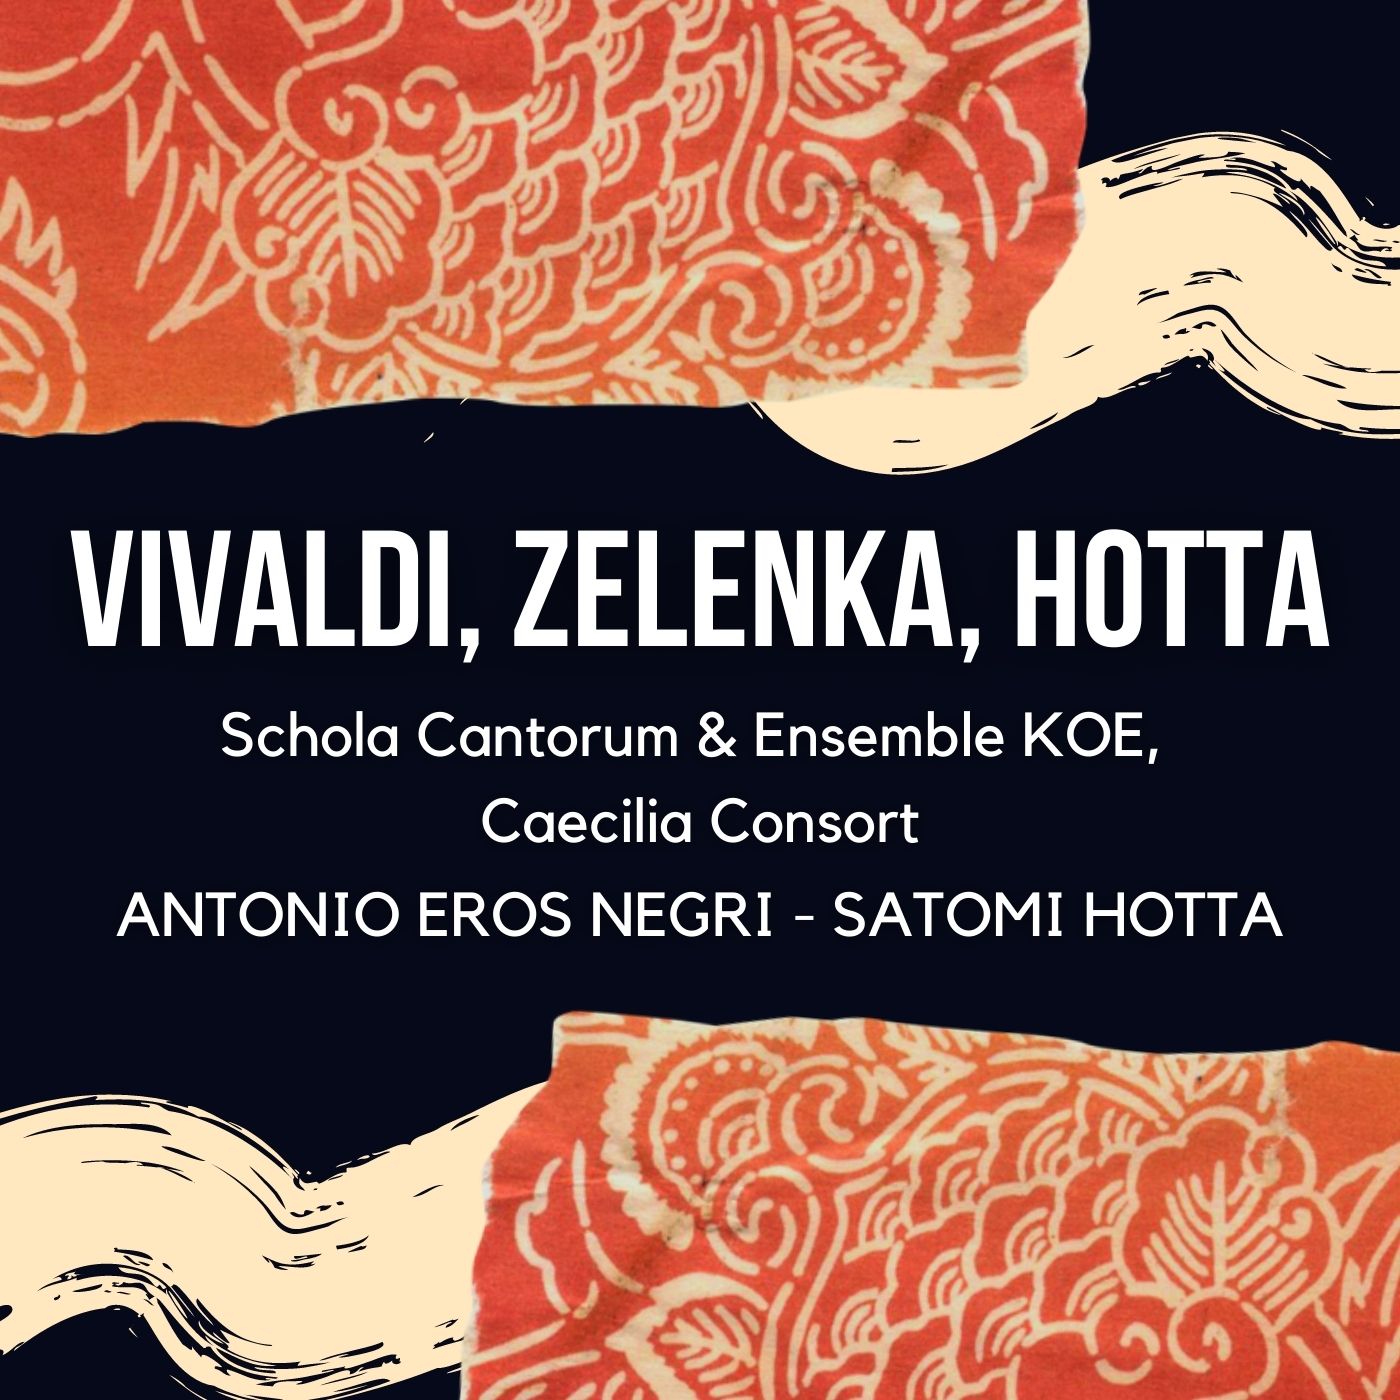 Vivaldi, Zelenka, Hotta